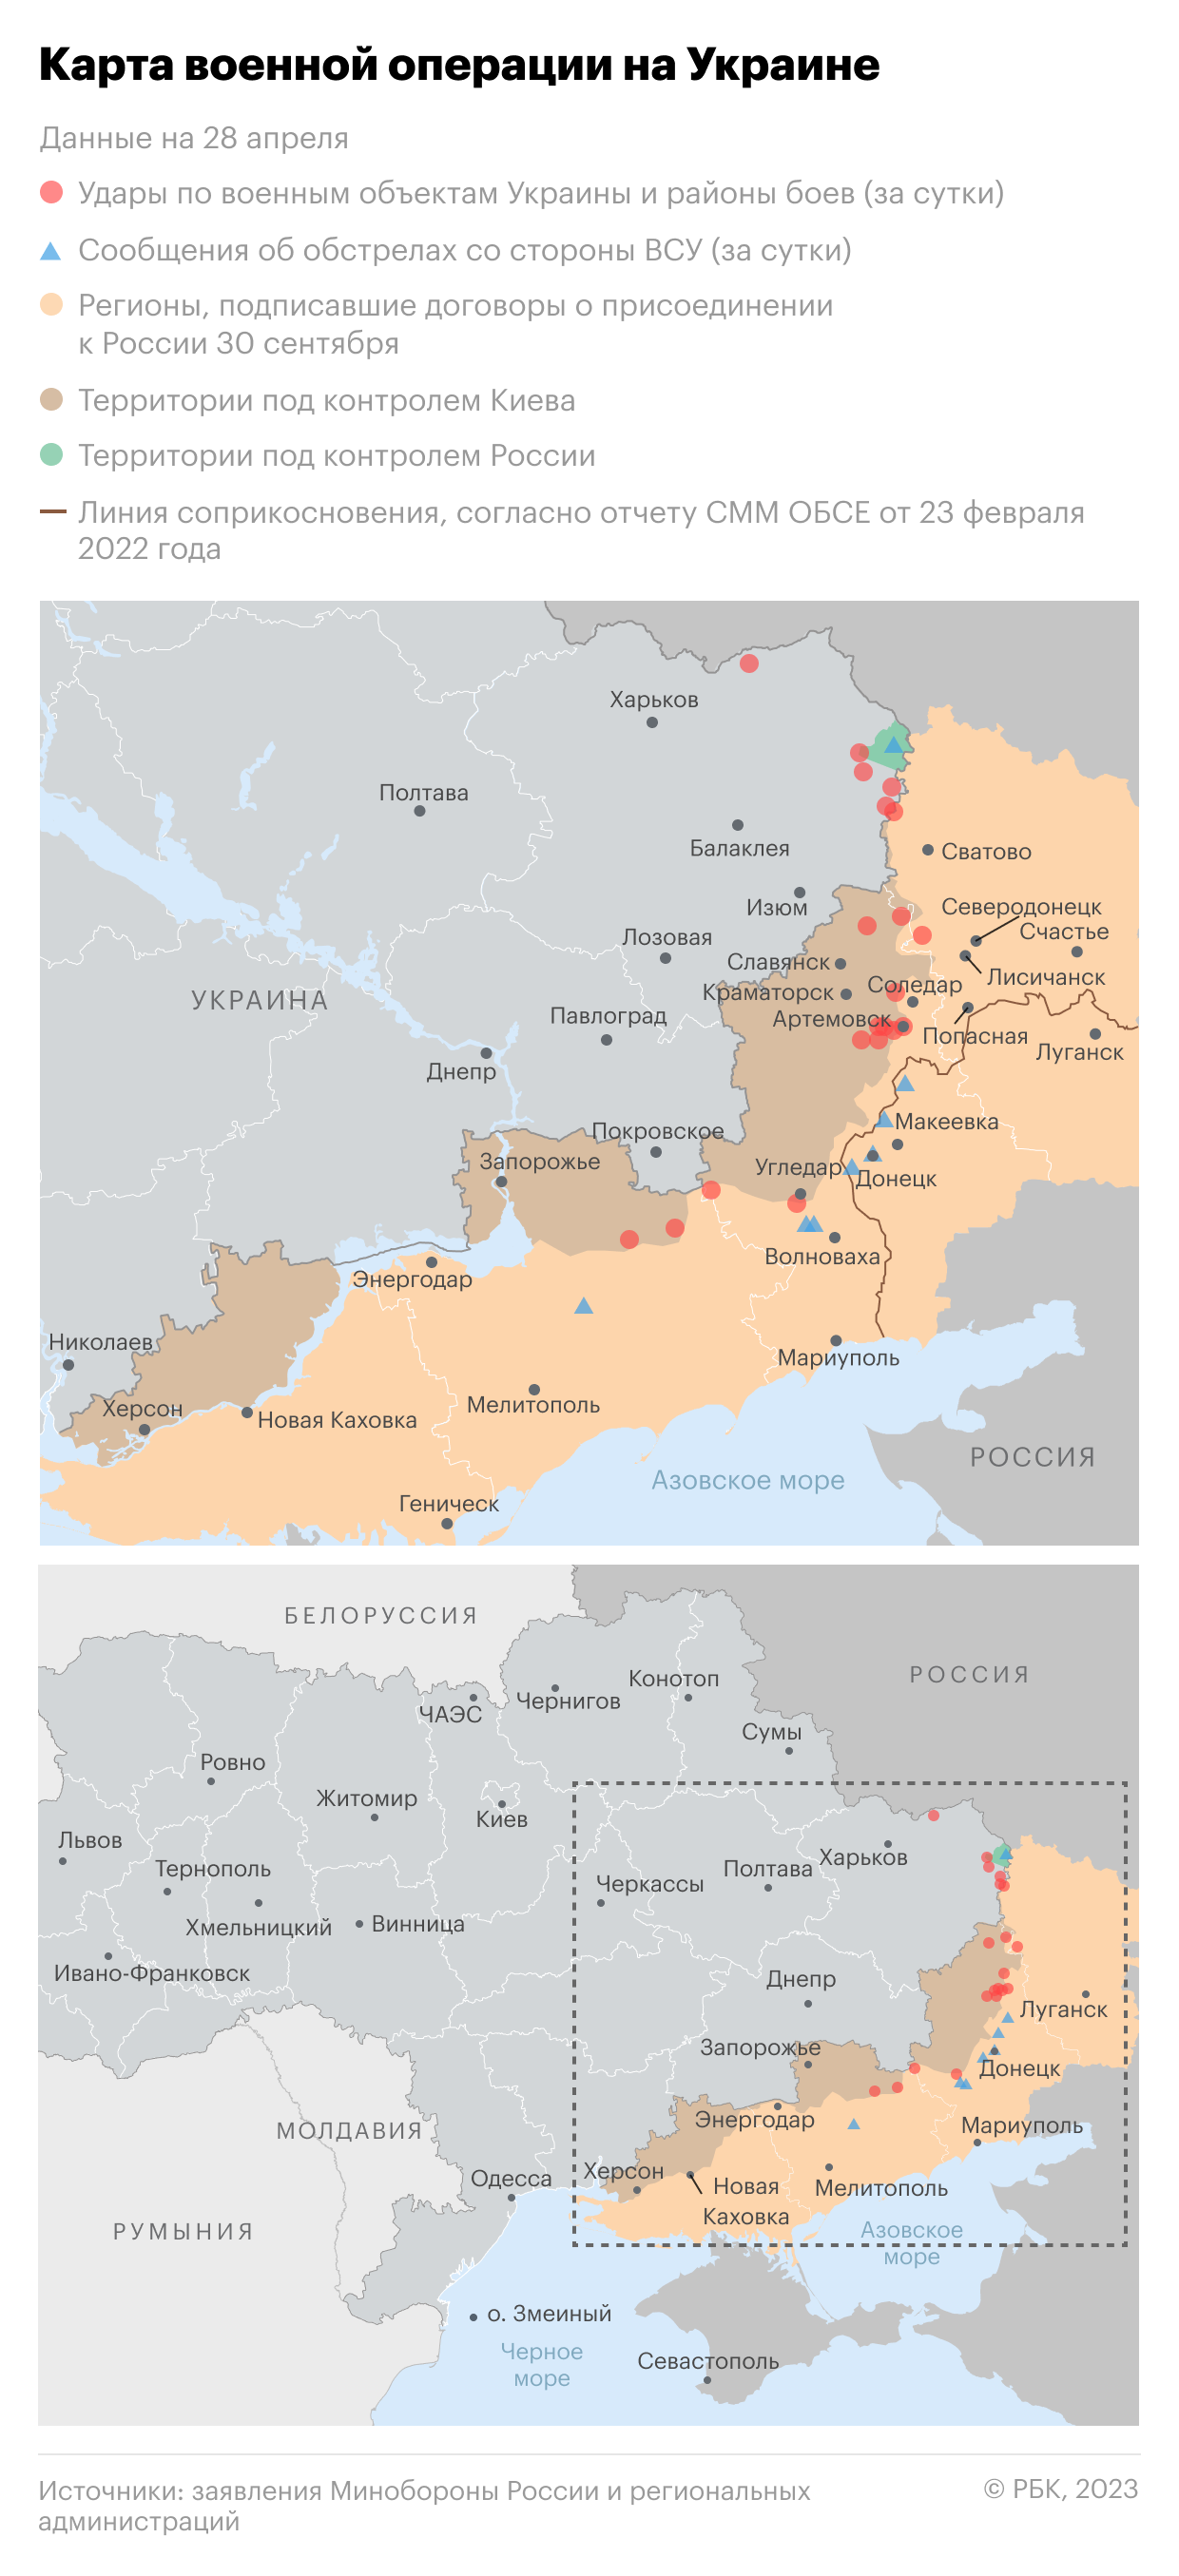 Военная операция на Украине. Карта на 28 апреля"/>













